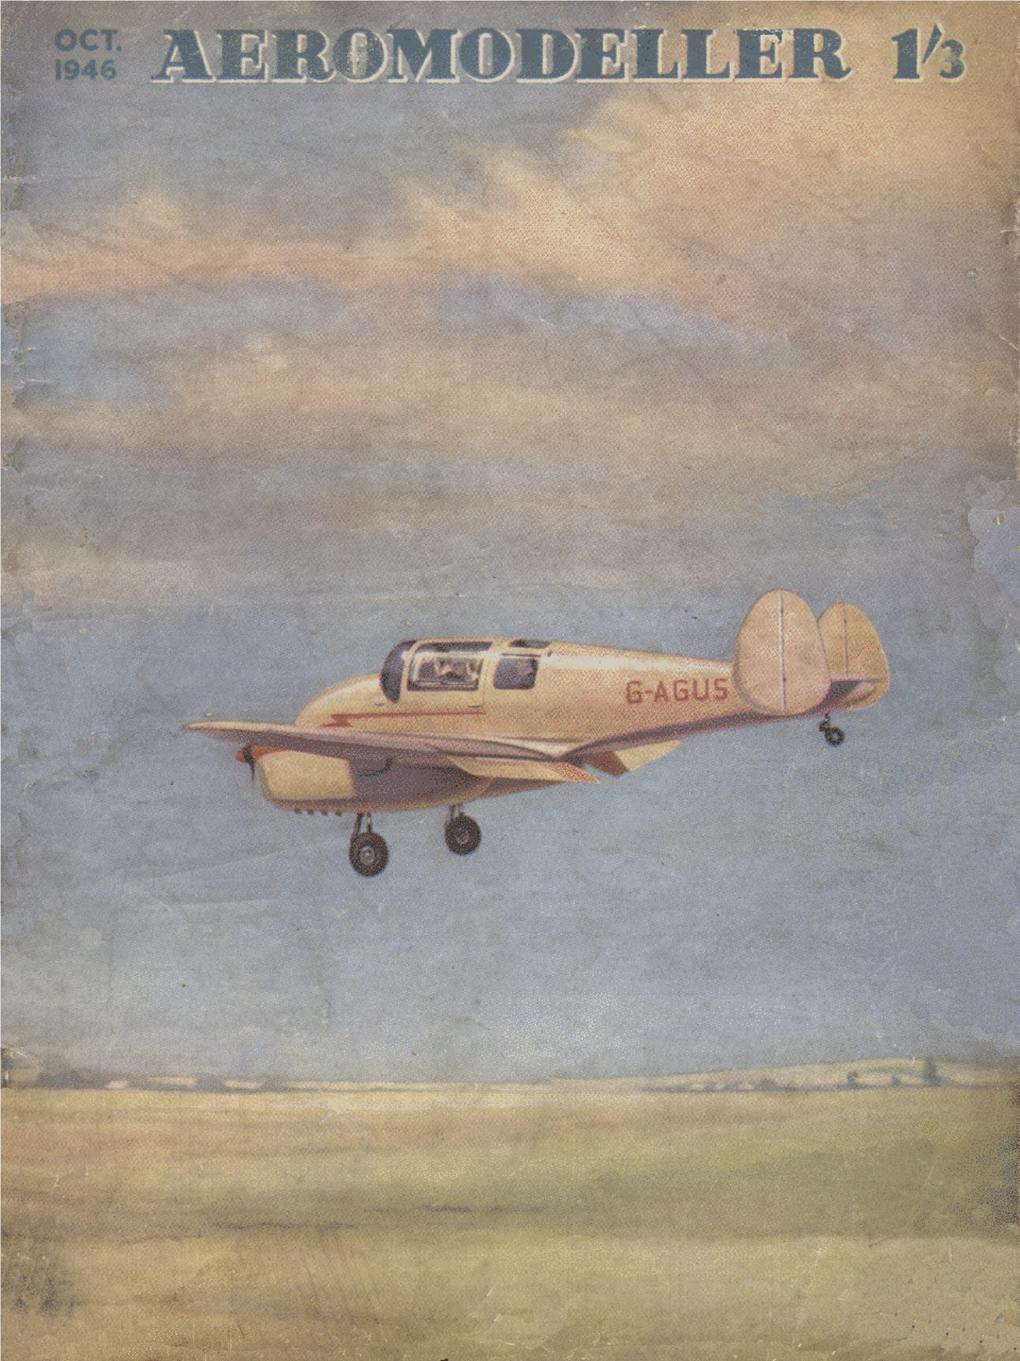 Aeromodeller October 1946